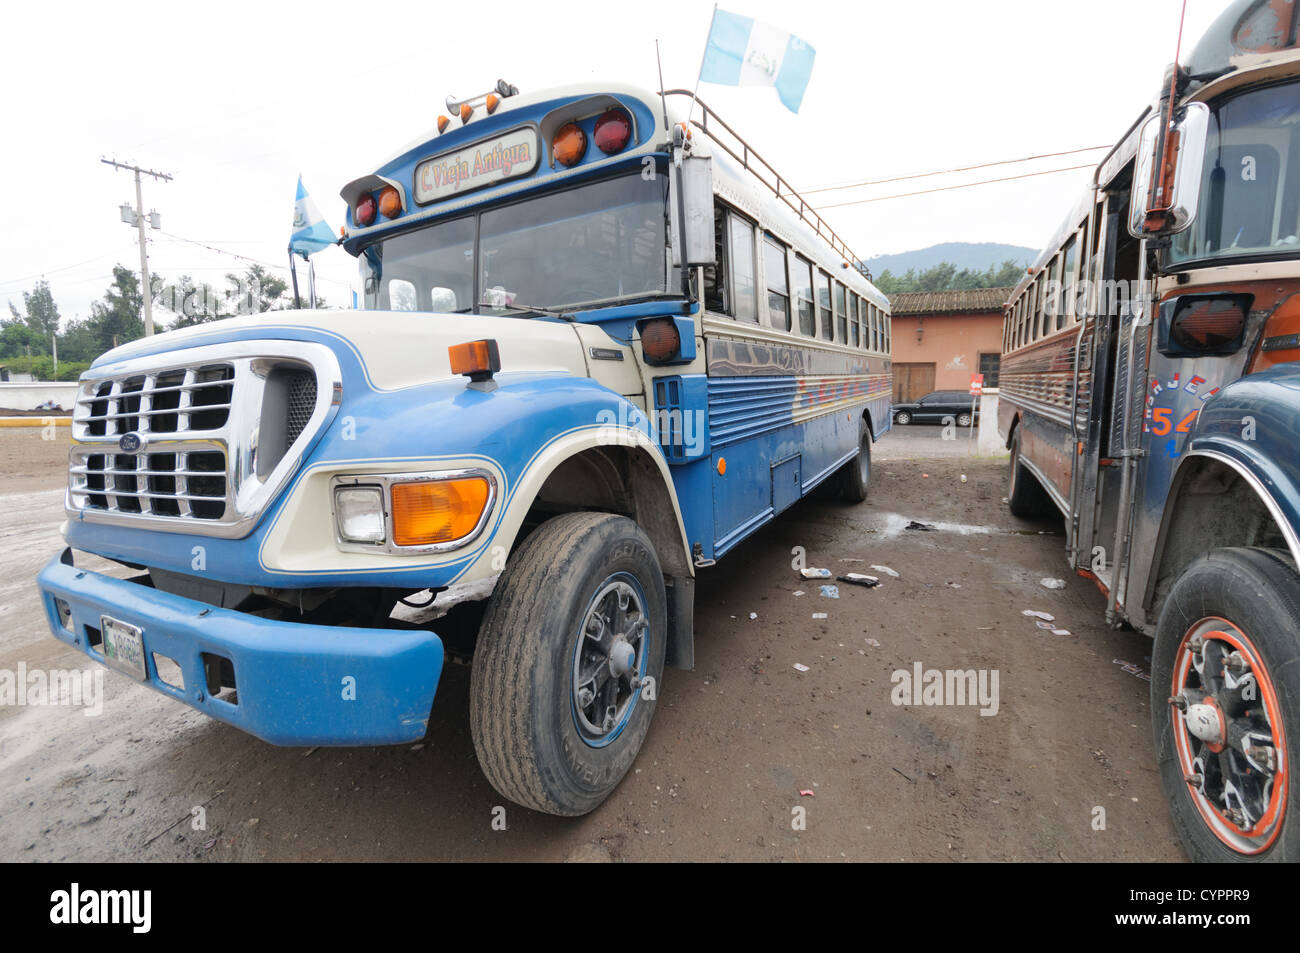 Ein blaue und weiße Huhn Bus, gemalt für den guatemaltekischen Nationalfarben, hinter dem Mercado Municipal (Stadtmarkt) in Antigua, Guatemala. Aus diesem umfangreichen zentralen Busbahnhof strahlenförmig der Routen in Guatemala. Oft bunt bemalt, die Huhn-Busse sind nachgerüsteten amerikanische Schulbusse und bieten ein günstiges Transportmittel im ganzen Land. Stockfoto